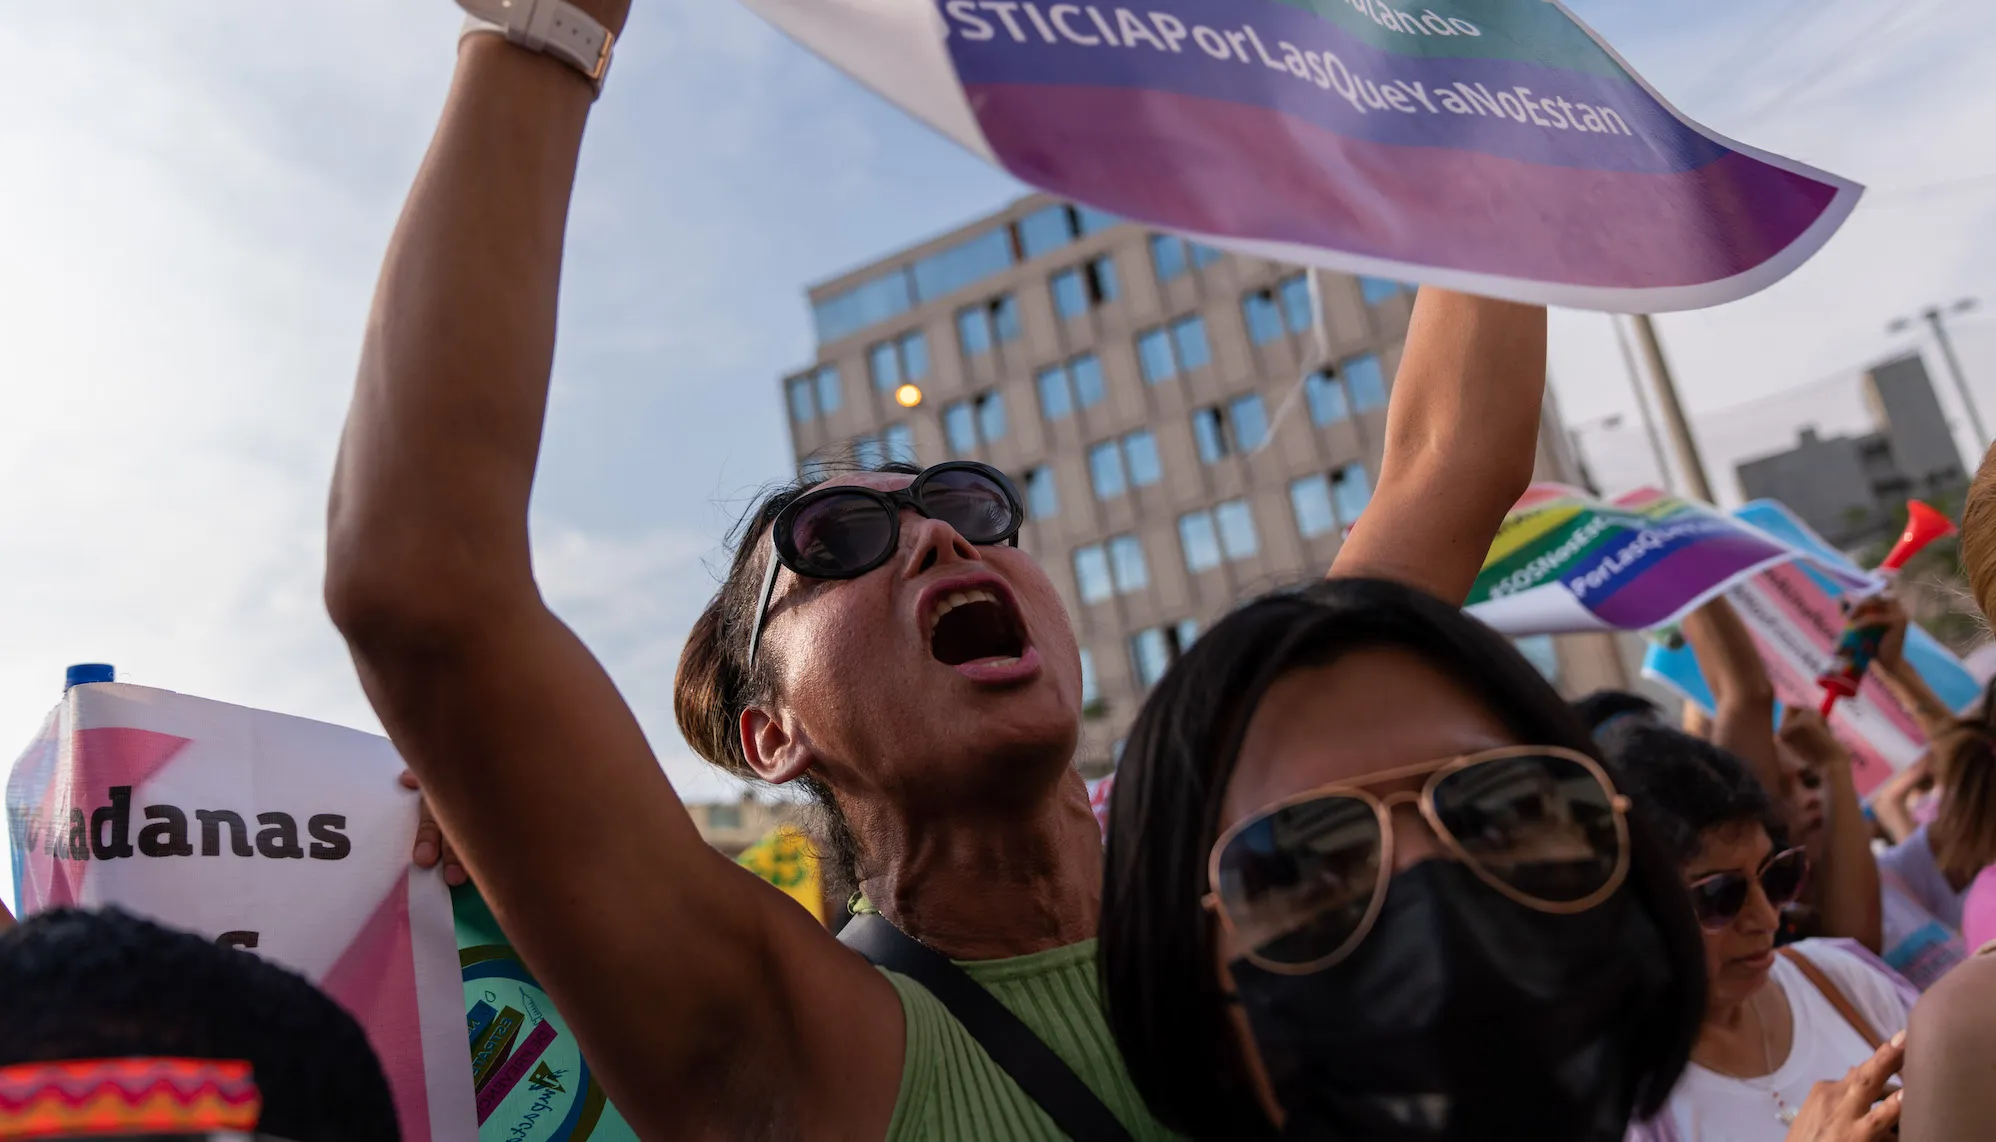 Perú clasifica a las personas trans como "enfermos mentales" tras un decreto gubernamental